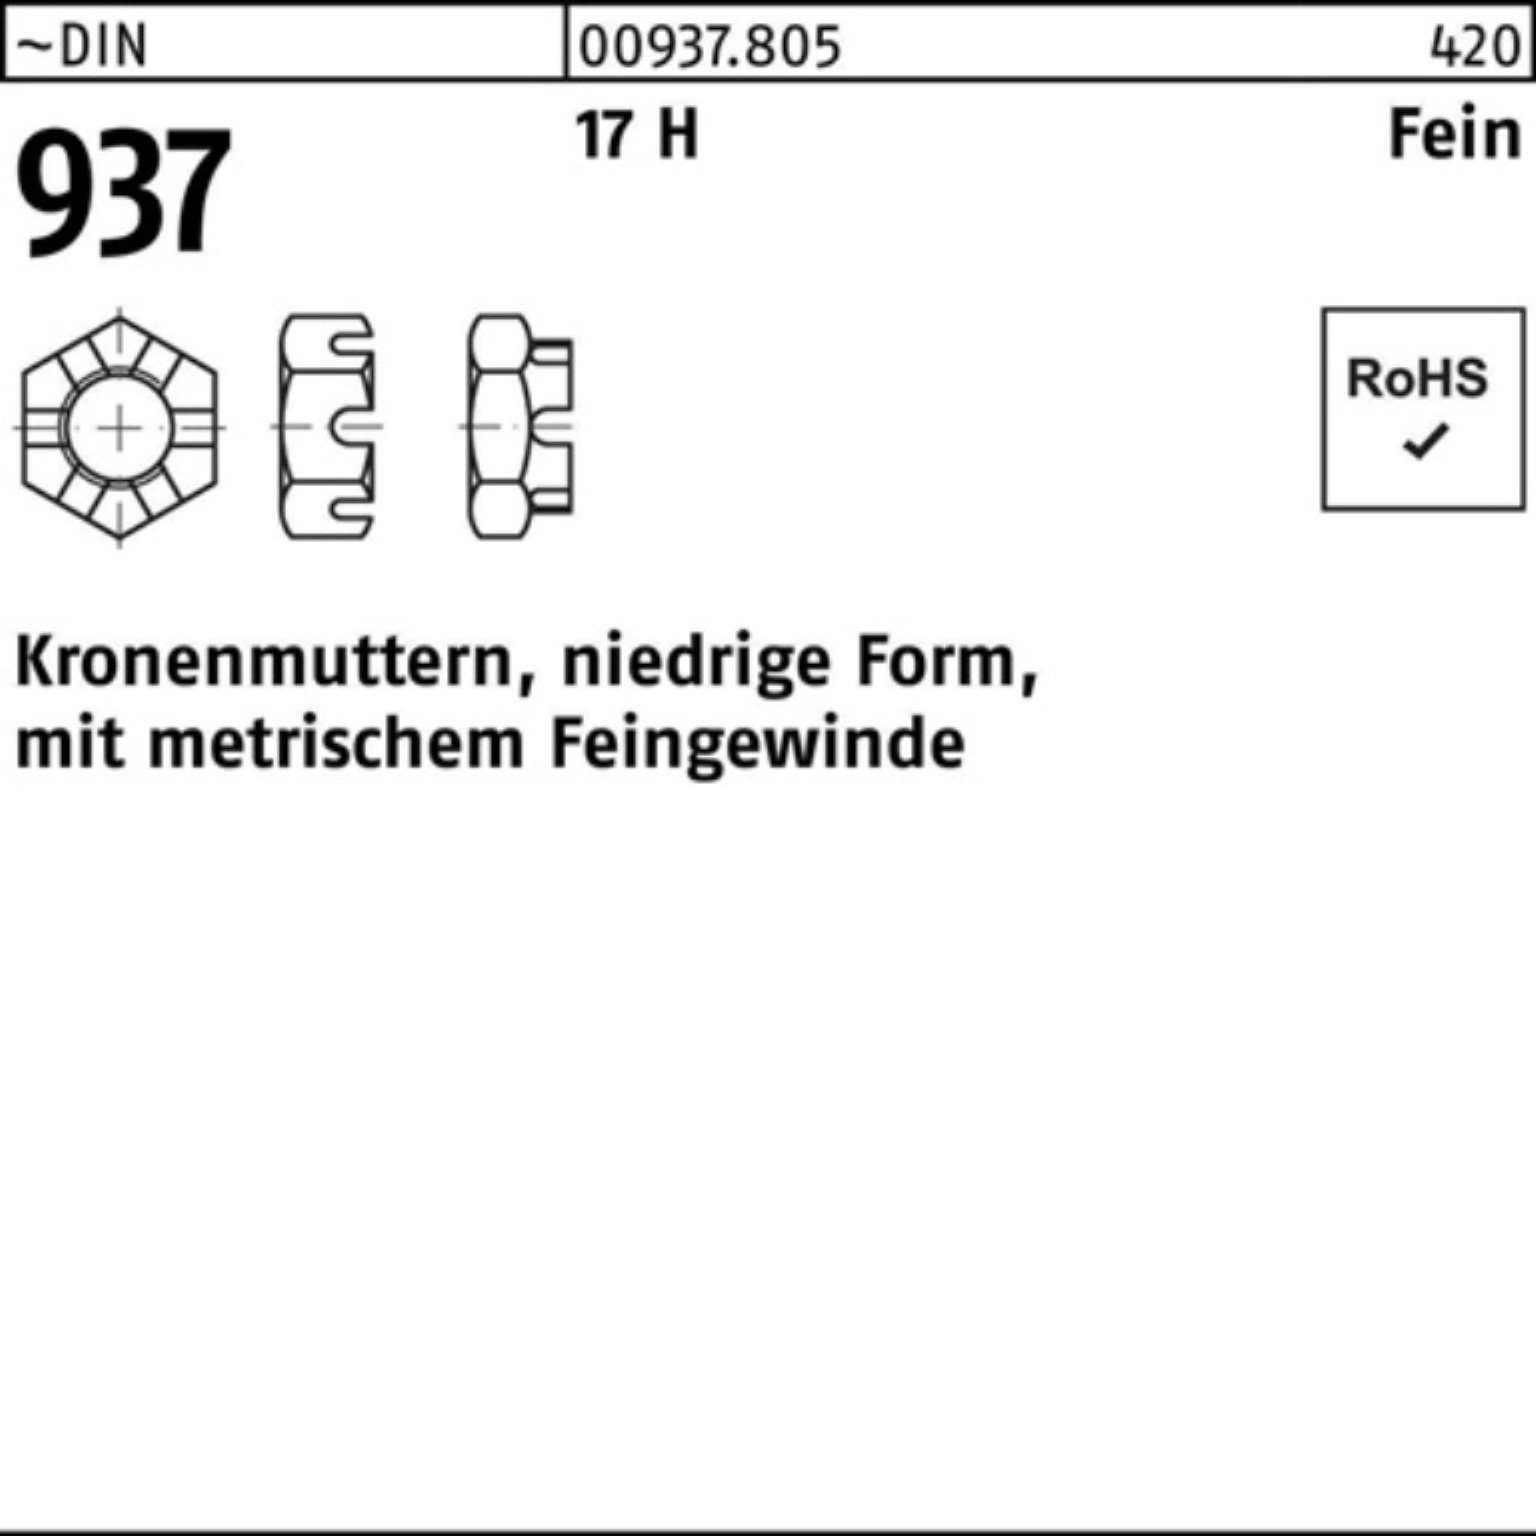 Reyher Kronenmutter 100er Pack Kronenmutter DIN 937 niedrige FormM39x 1,5 17 H Feingew. 1